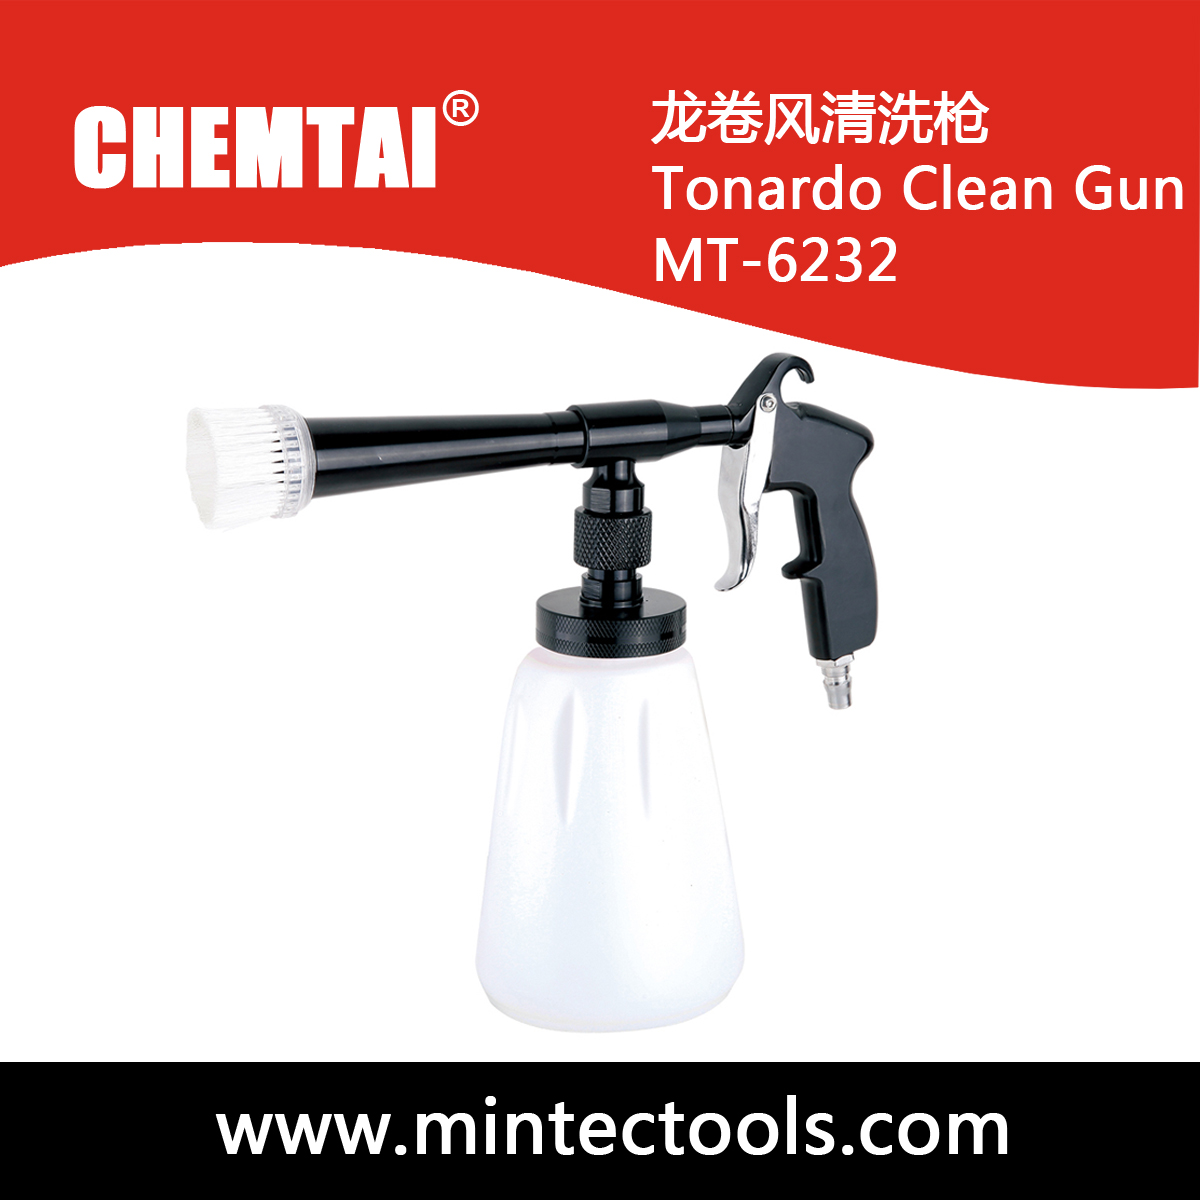 Tornado Clean Gun MT-6232